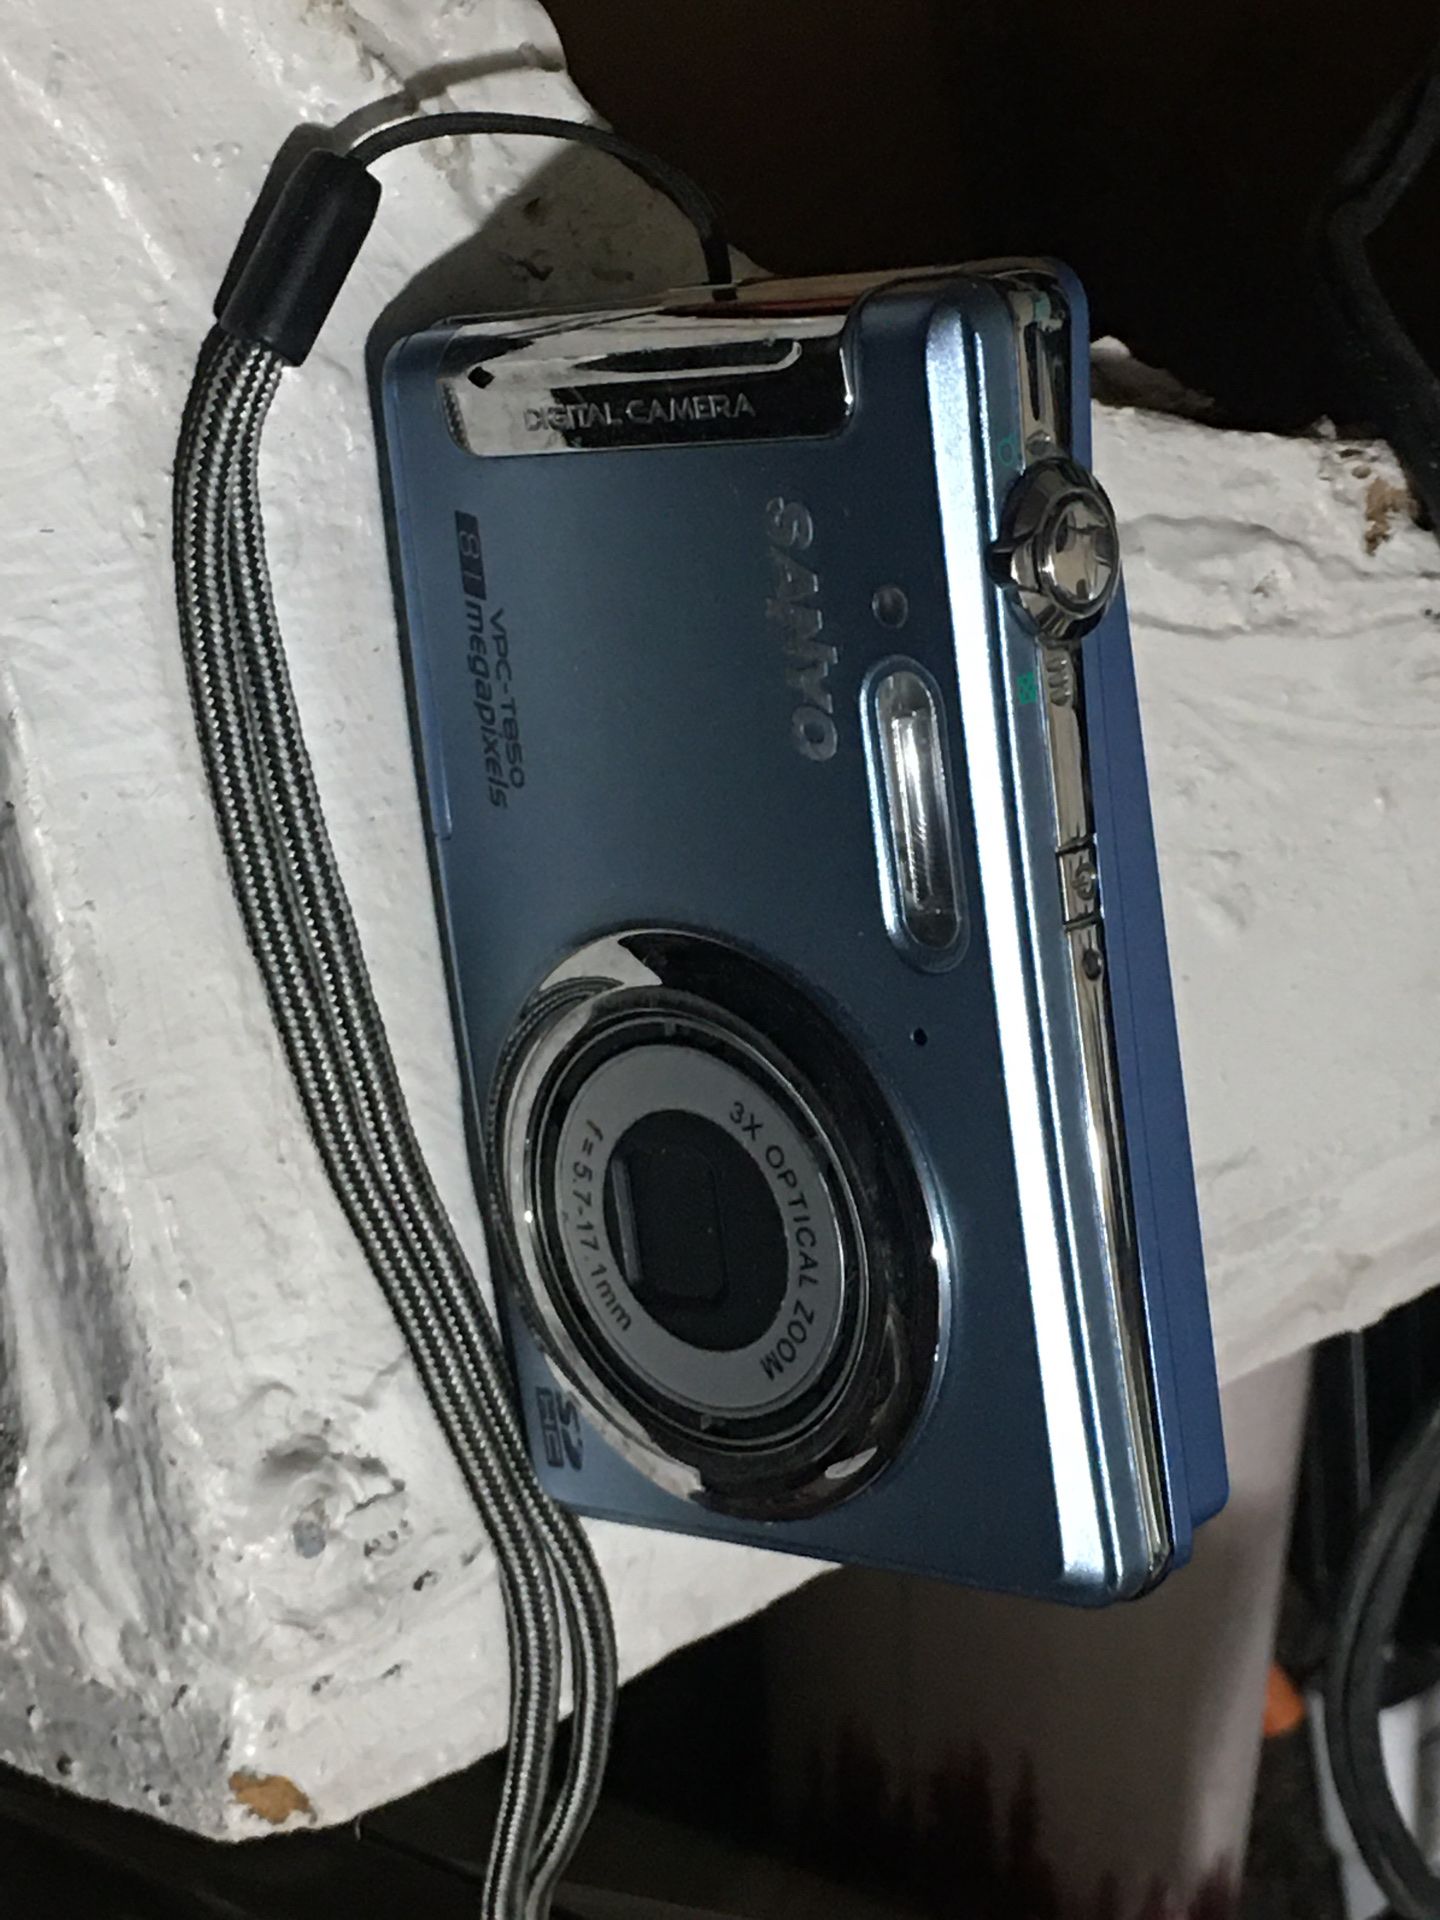 Sonyo digital camera